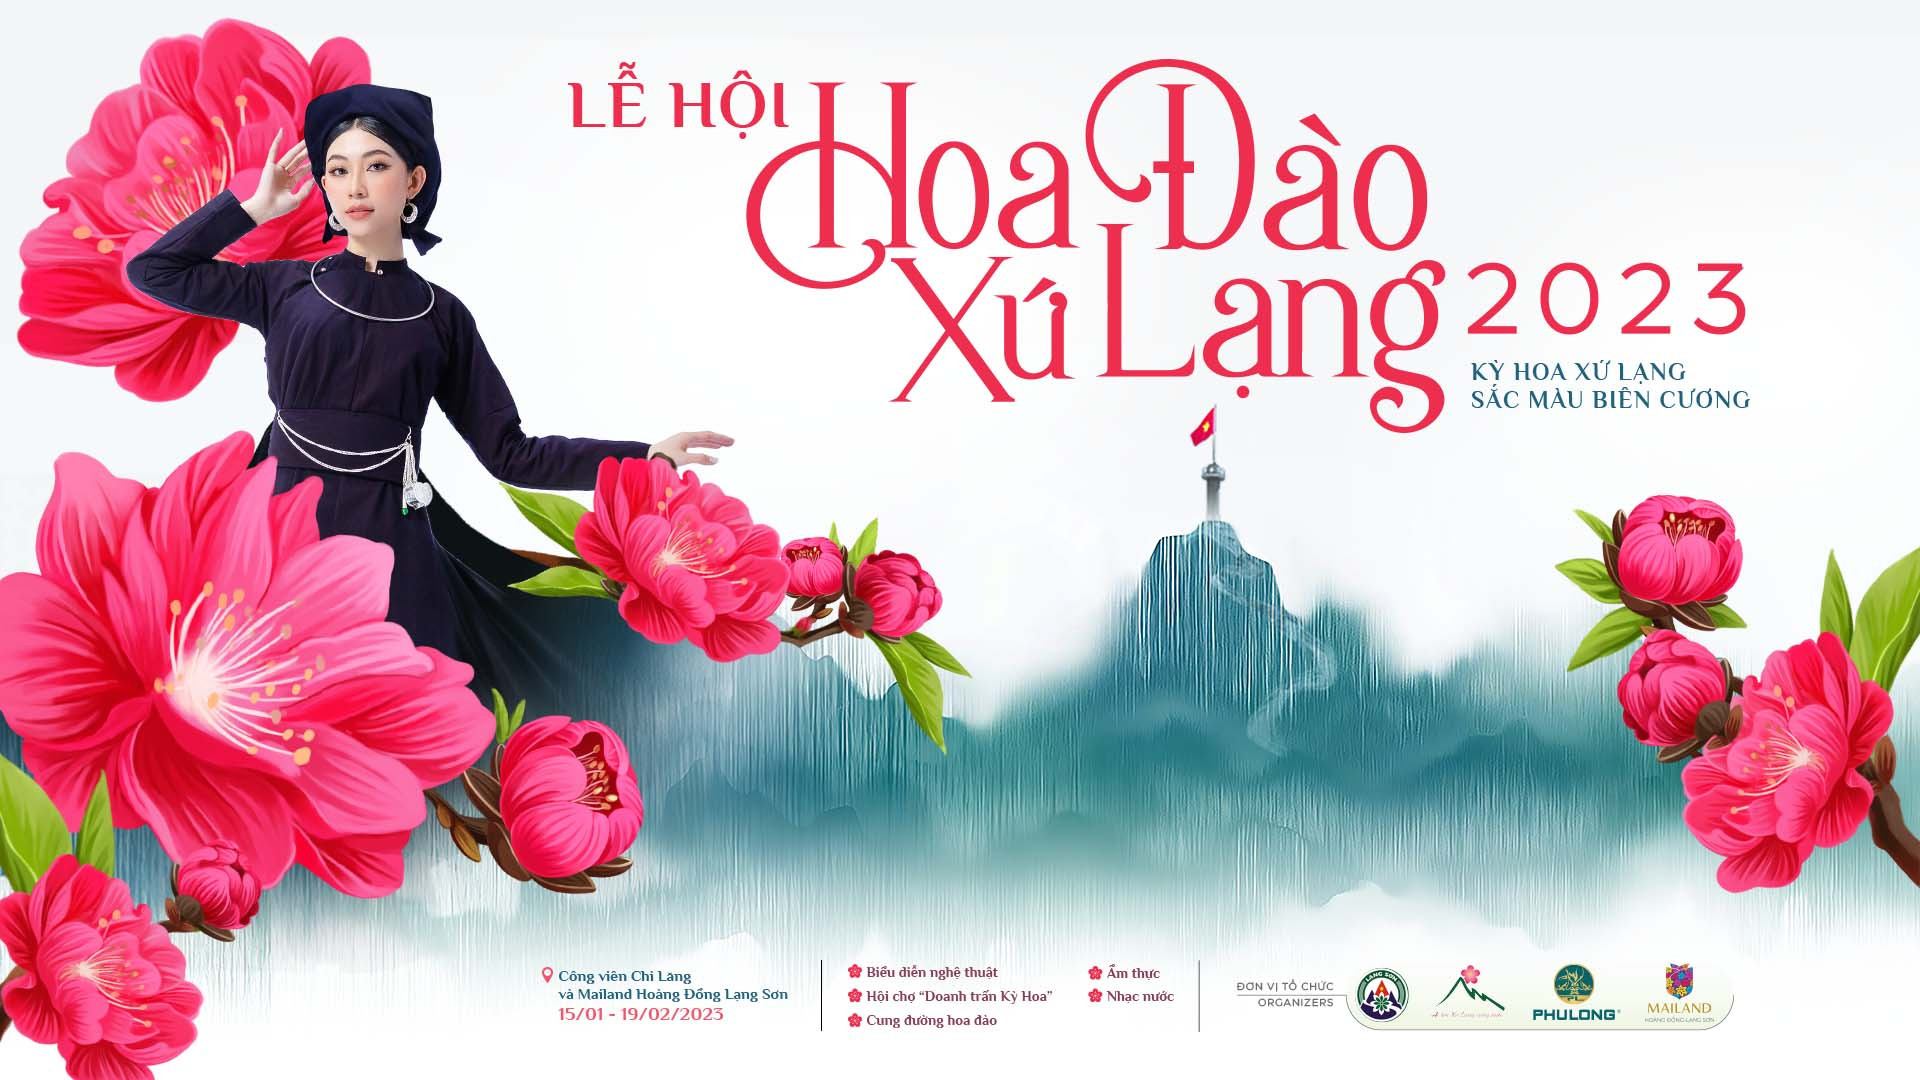 Lễ hội hoa đào đã trở thành một phần không thể thiếu của văn hóa Vietnam. Tại đây, bạn sẽ được chiêm ngưỡng hàng nghìn loài hoa đào khác nhau cùng những trò chơi và sự kiện vui nhộn. Hãy đến tham gia lễ hội hoa đào để cùng nhau tận hưởng niềm vui của văn hóa và một mùa xuân đáng nhớ.